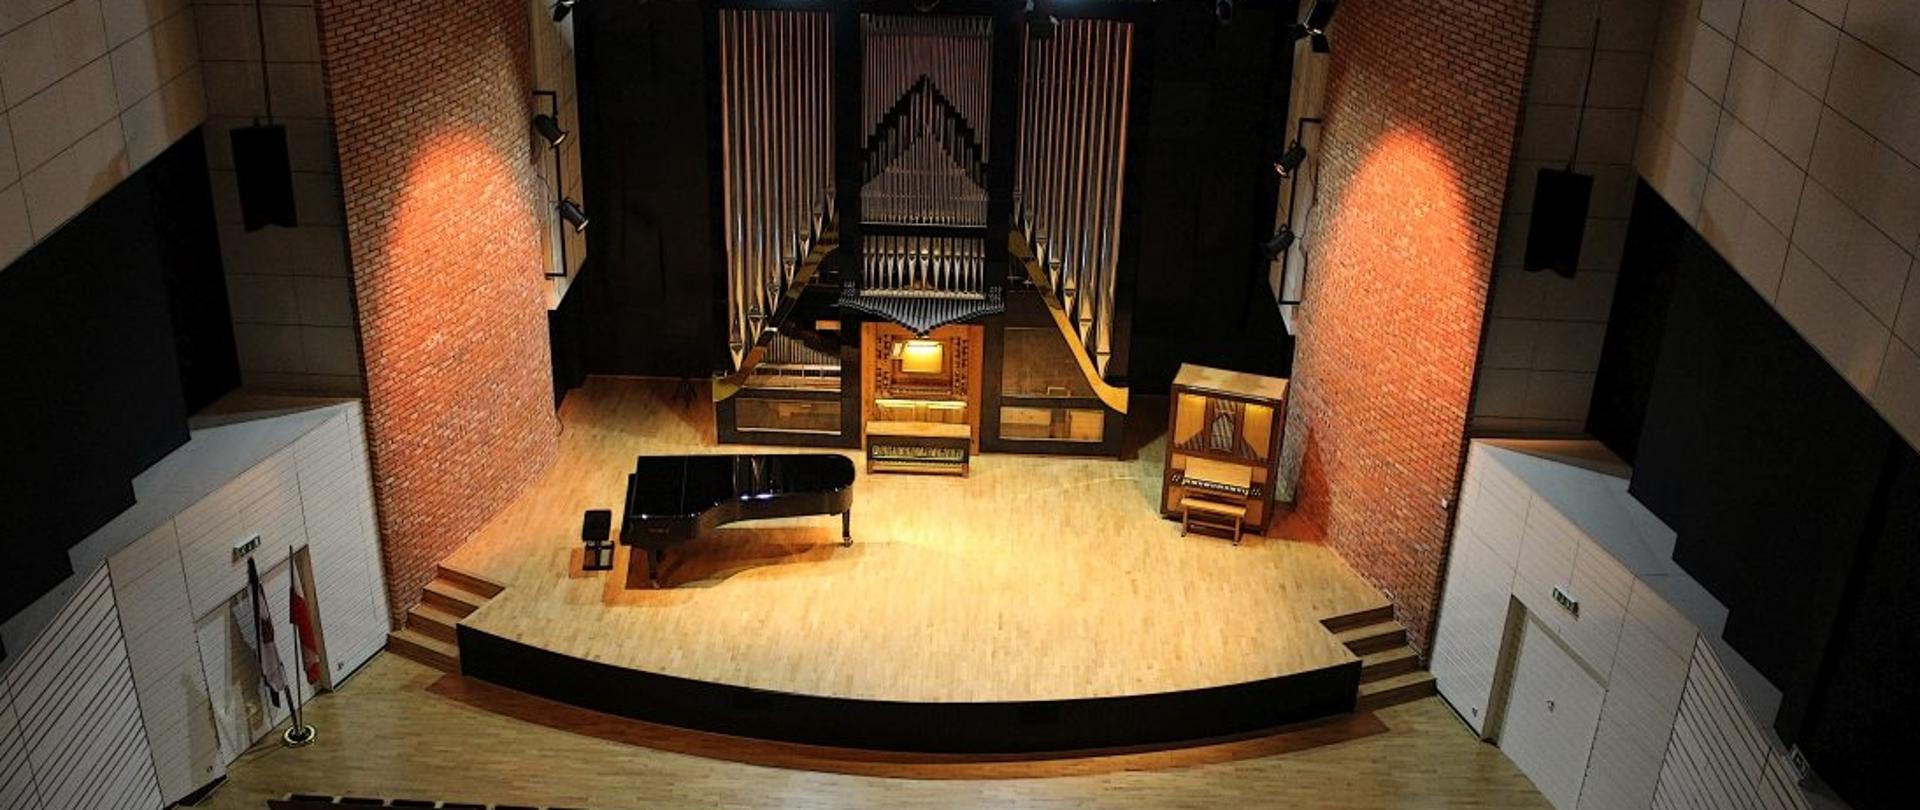 zdjęcie sali koncertowej z góry, w dolnej części widoczna widowni, na scenie organy oraz fortepian, scsena oświetlona, widownia pusta